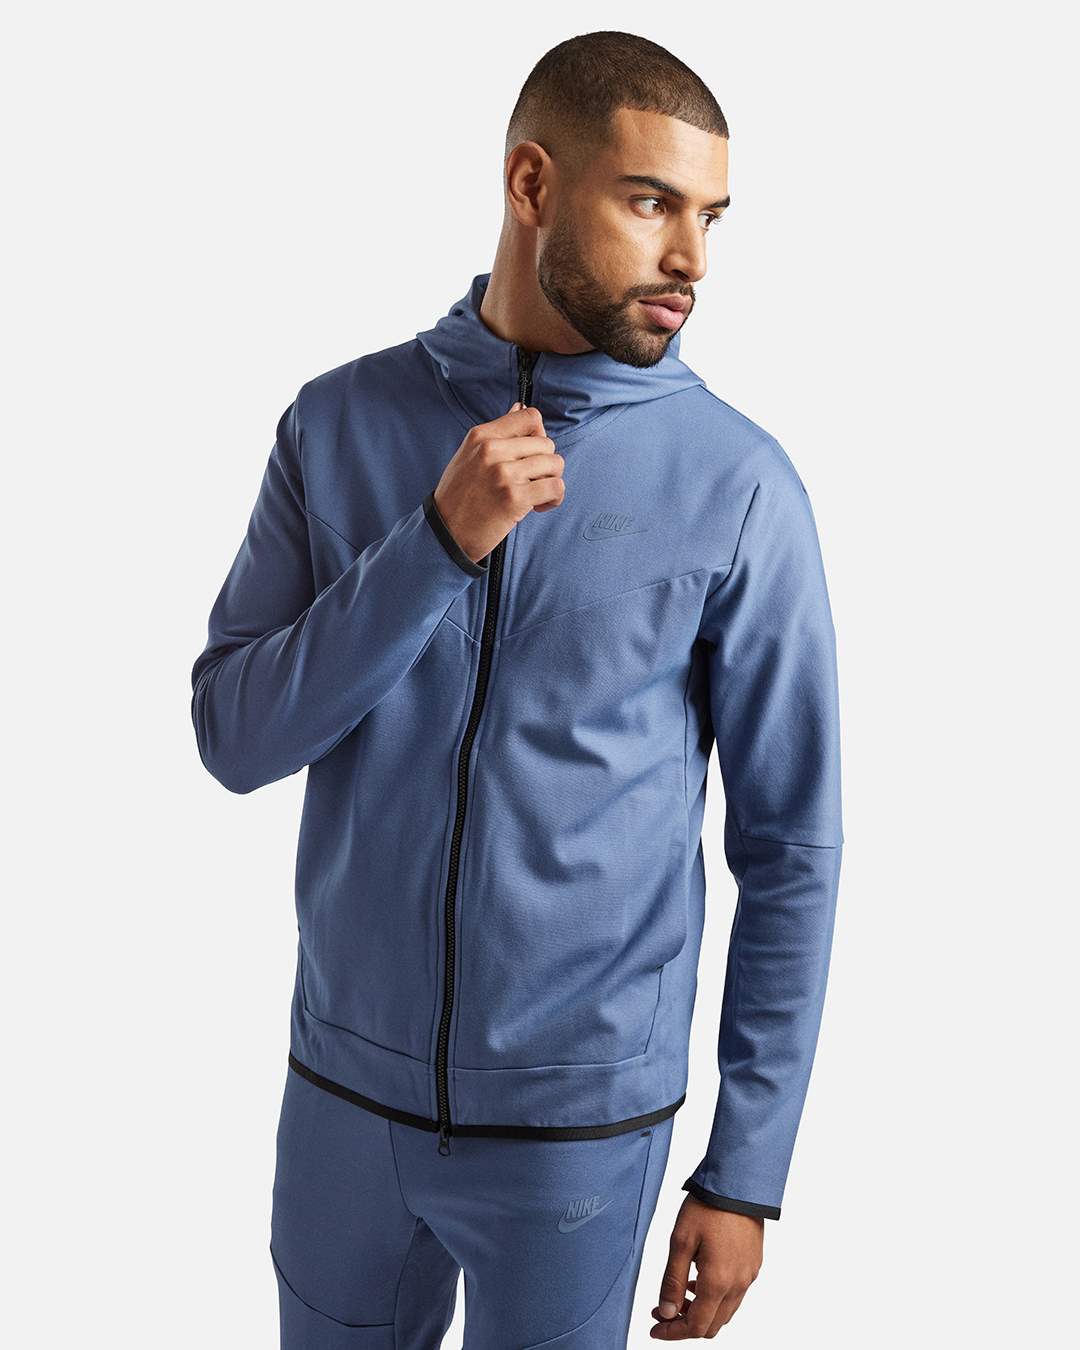 Veste à capuche Nike Tech Fleece Lightweight - Bleu/Noir